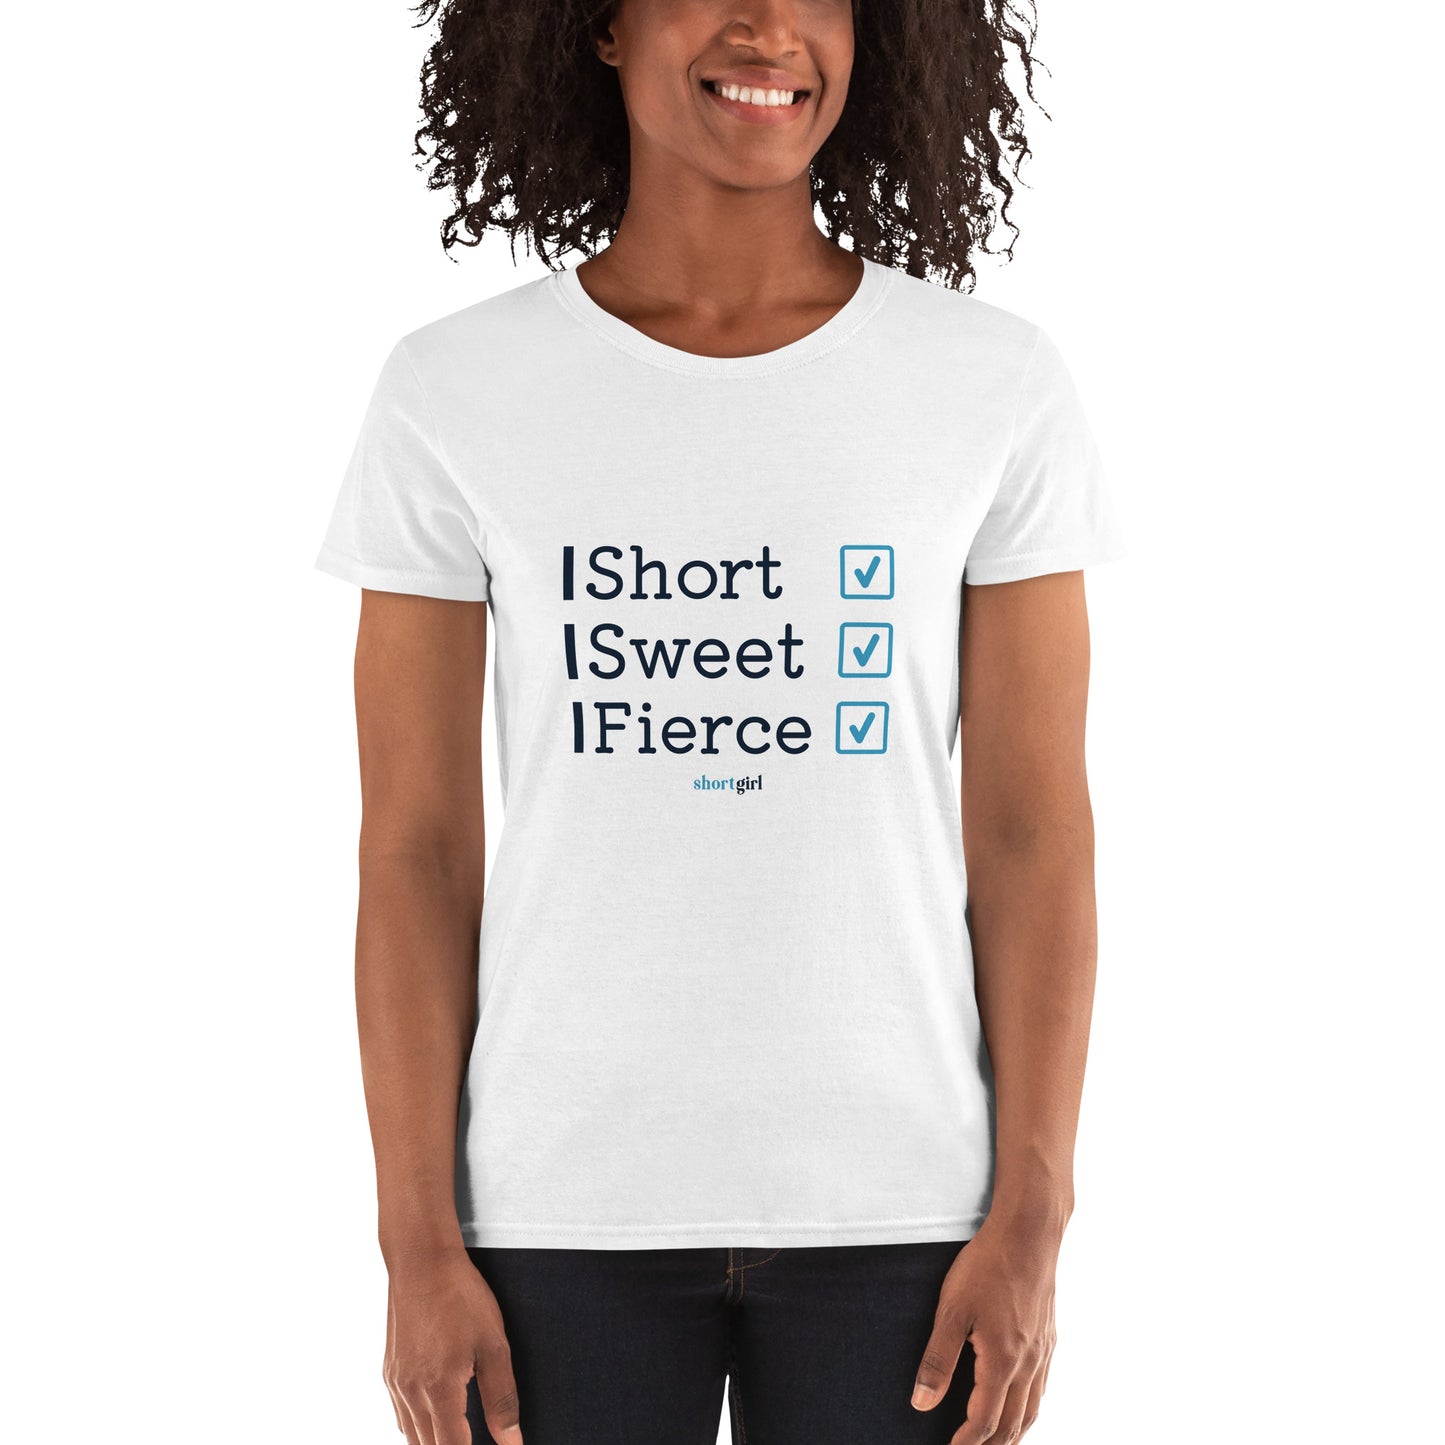 Women's short sleeve t-shirt - Short, Sweet, Fierce